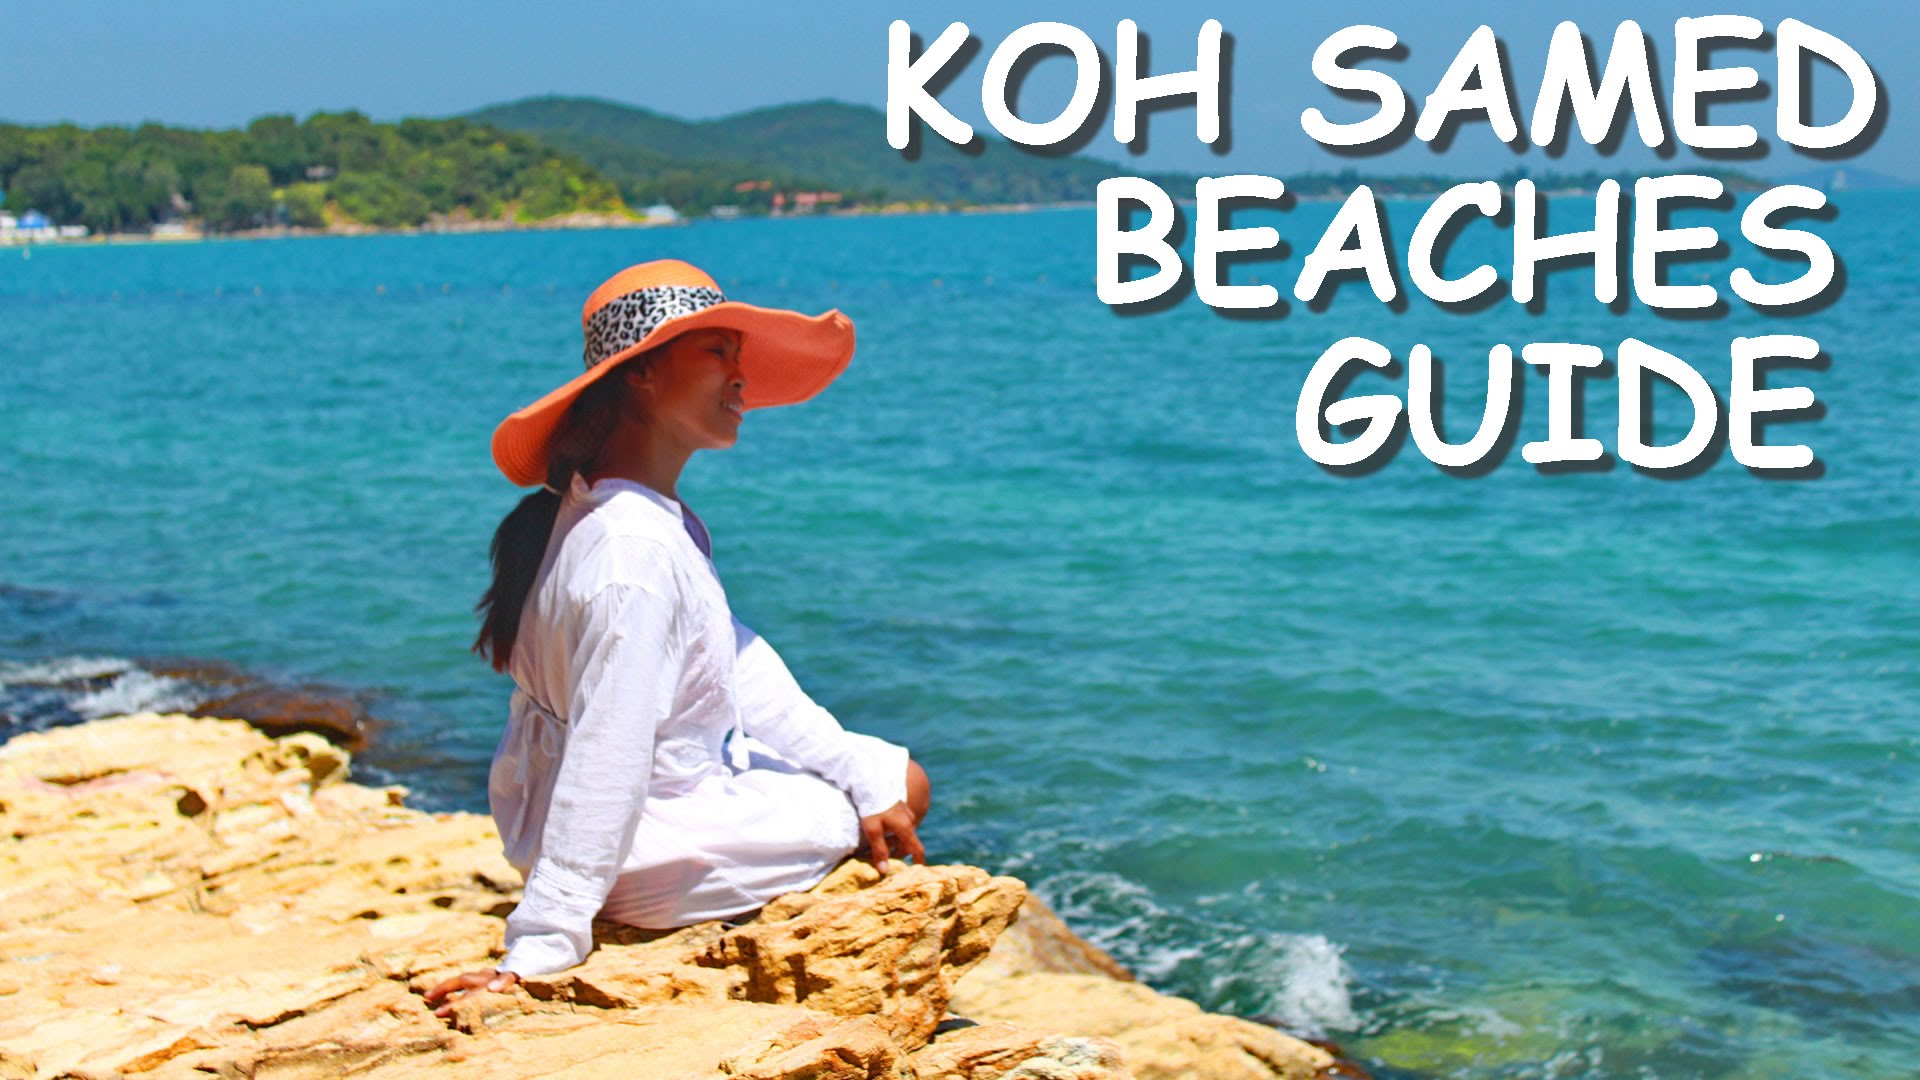 Koh Samet (Samed) Beaches Guide, Best Island near Bangkok 2015 ...